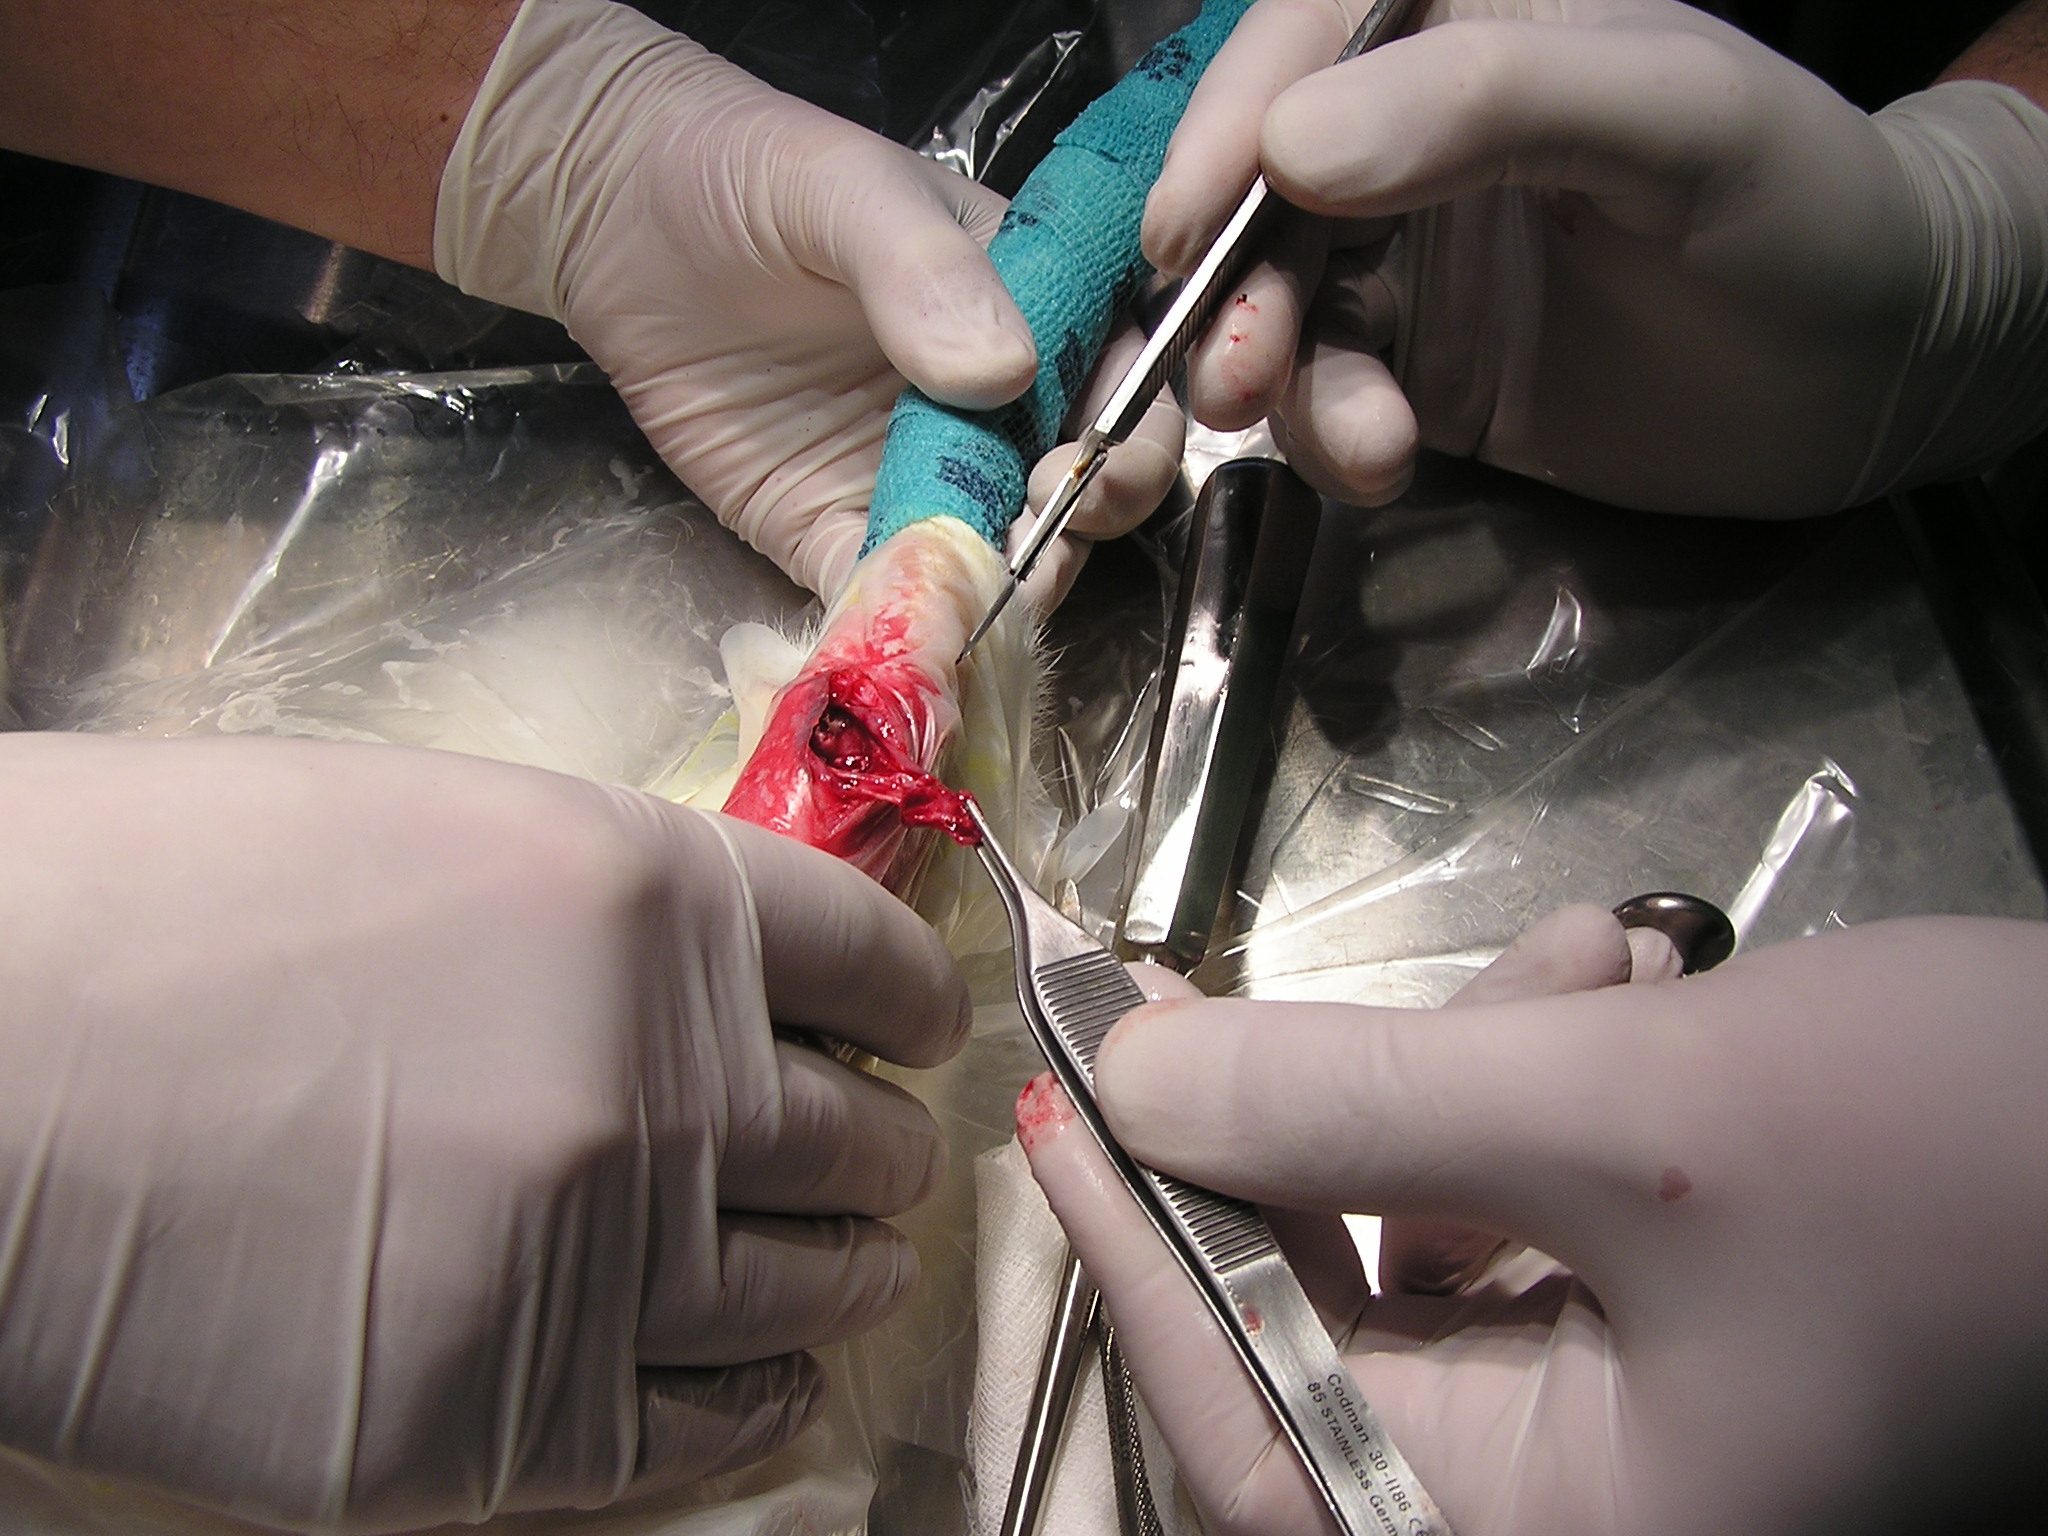 Csontgraft kísérlet nyúlon - a kép a Miskolci Állatkórházban készült